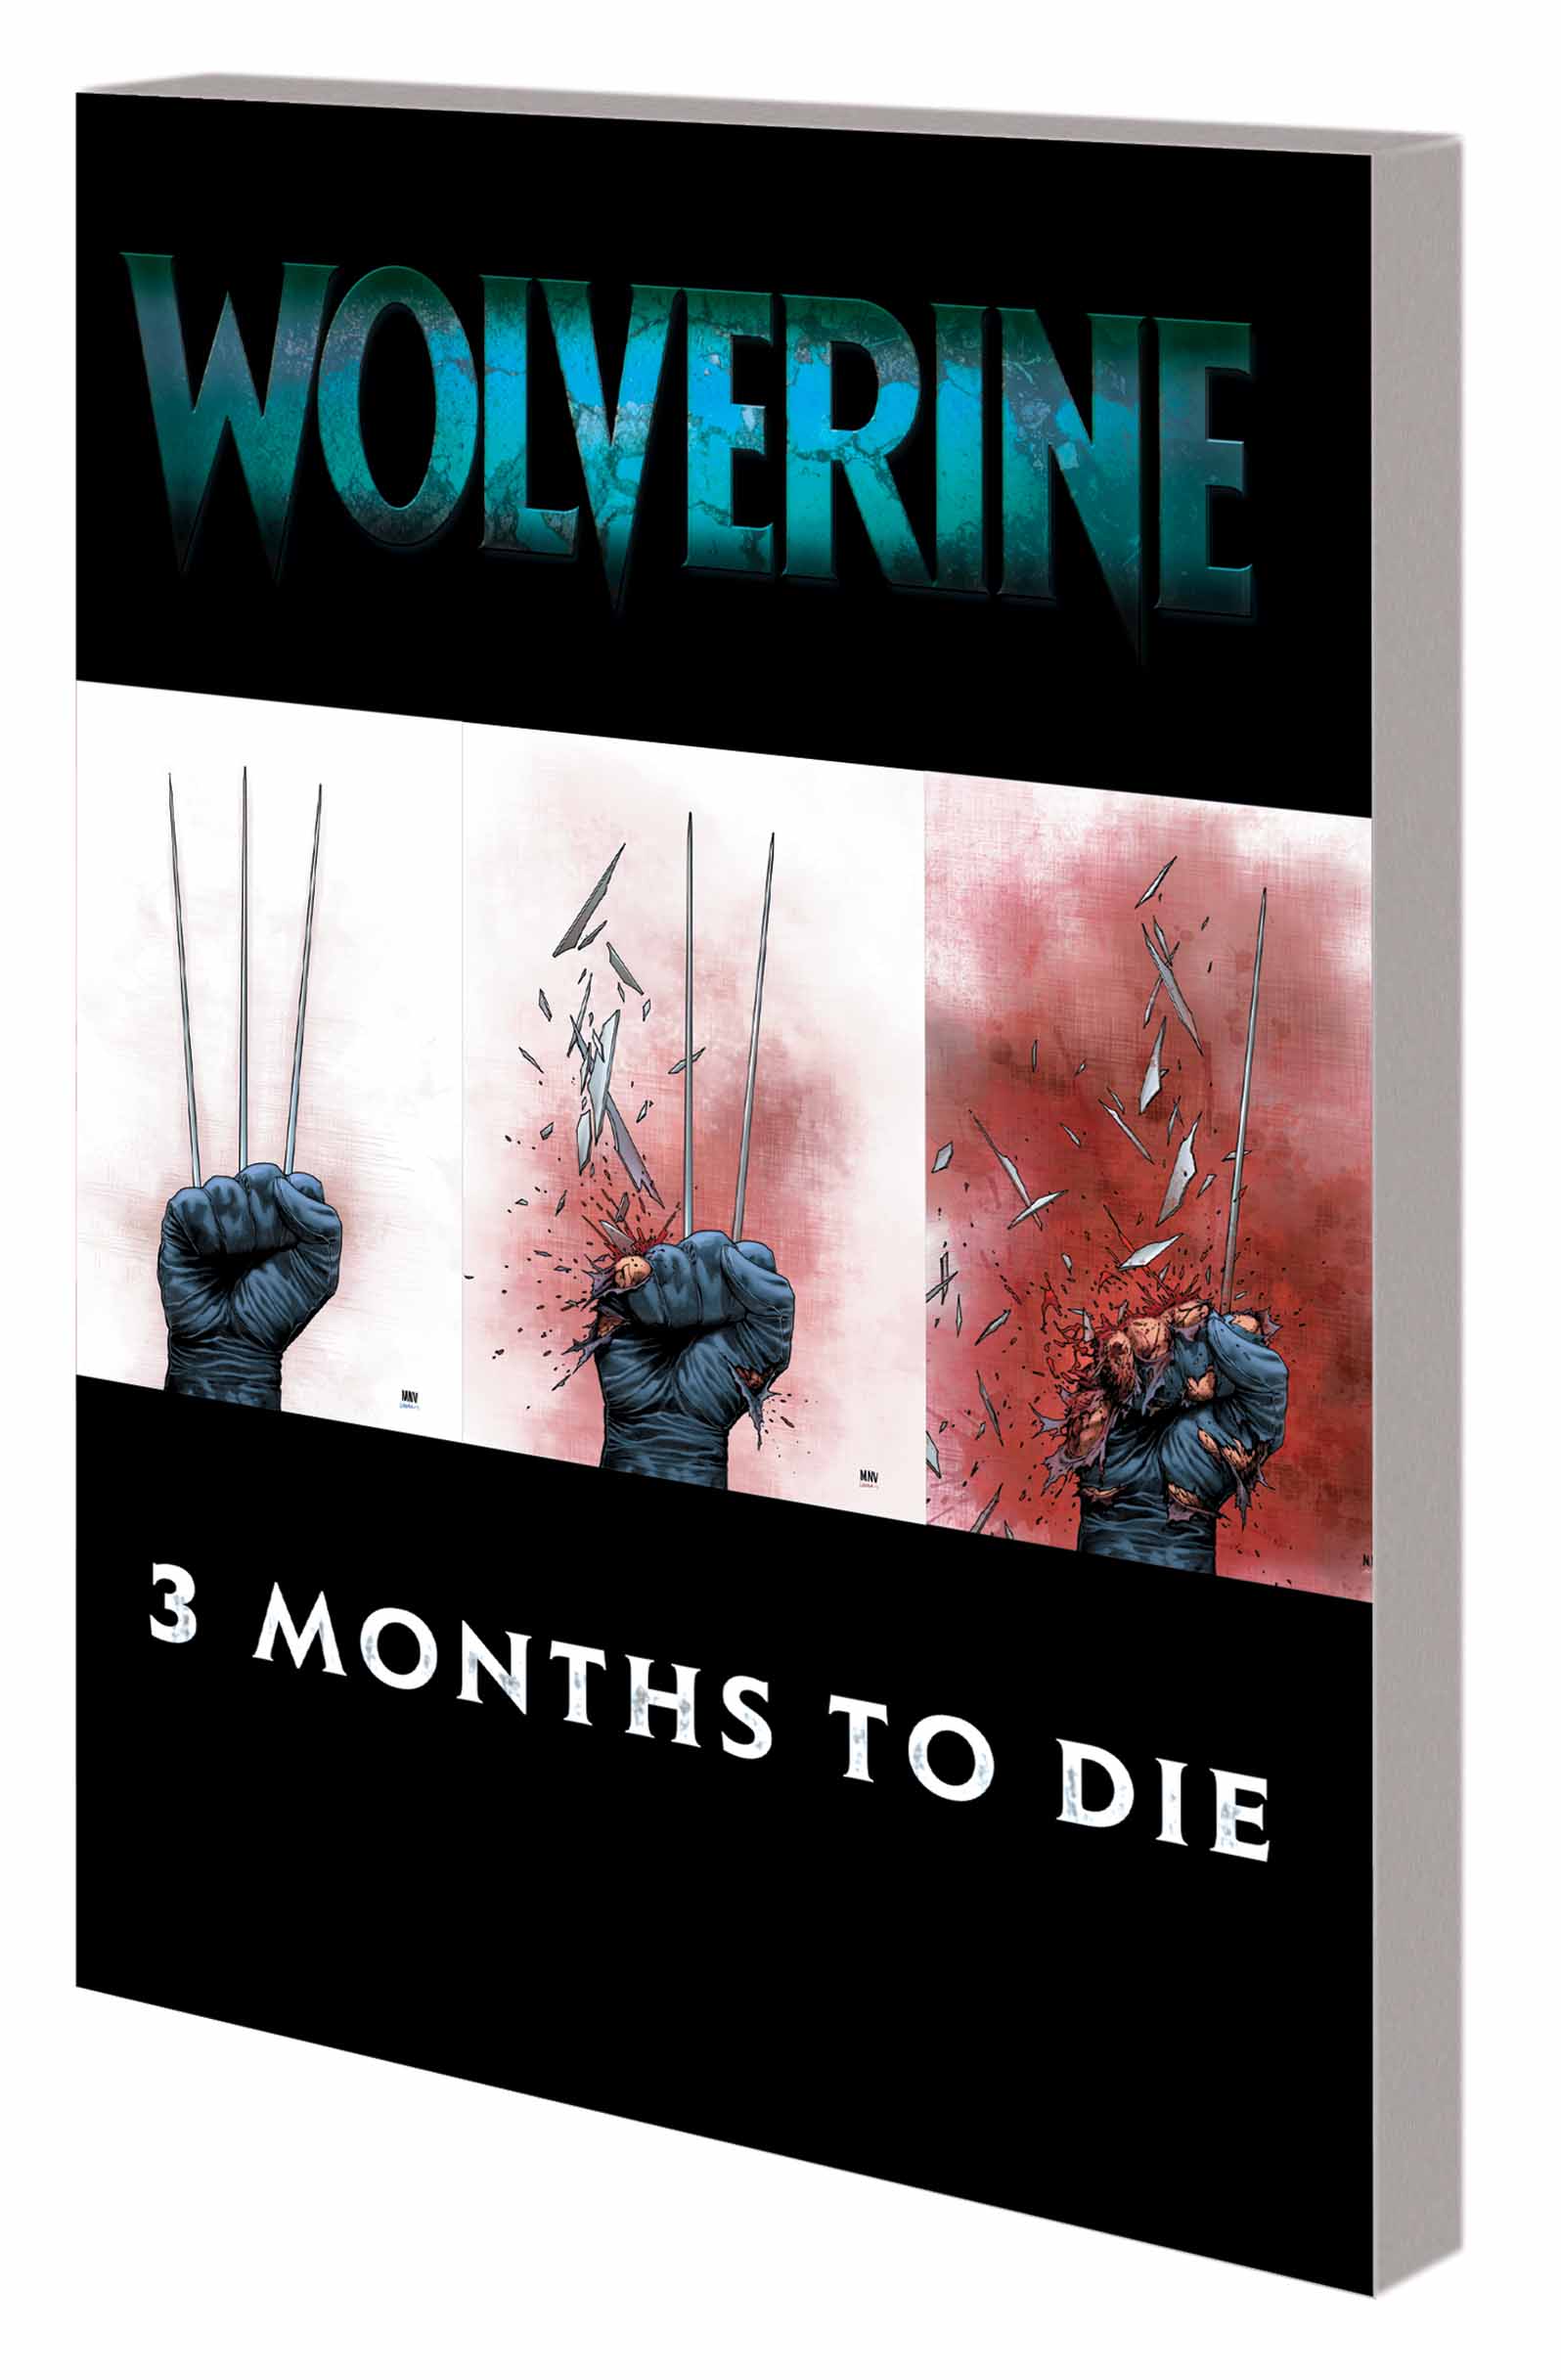 Wolverine: Three Months to Die Book 2 (Trade Paperback)